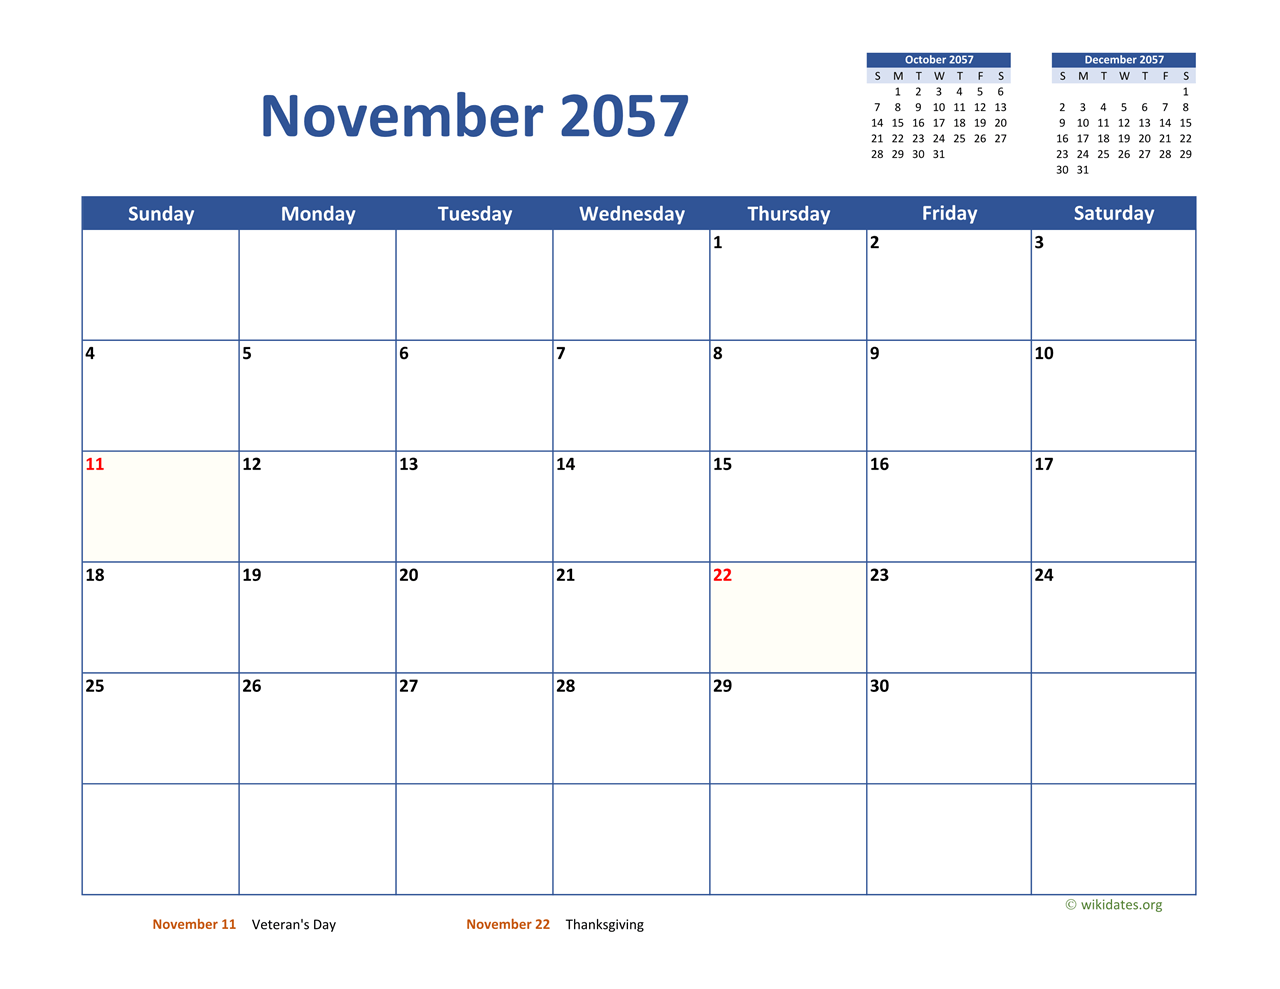 november-2057-calendar-classic-wikidates